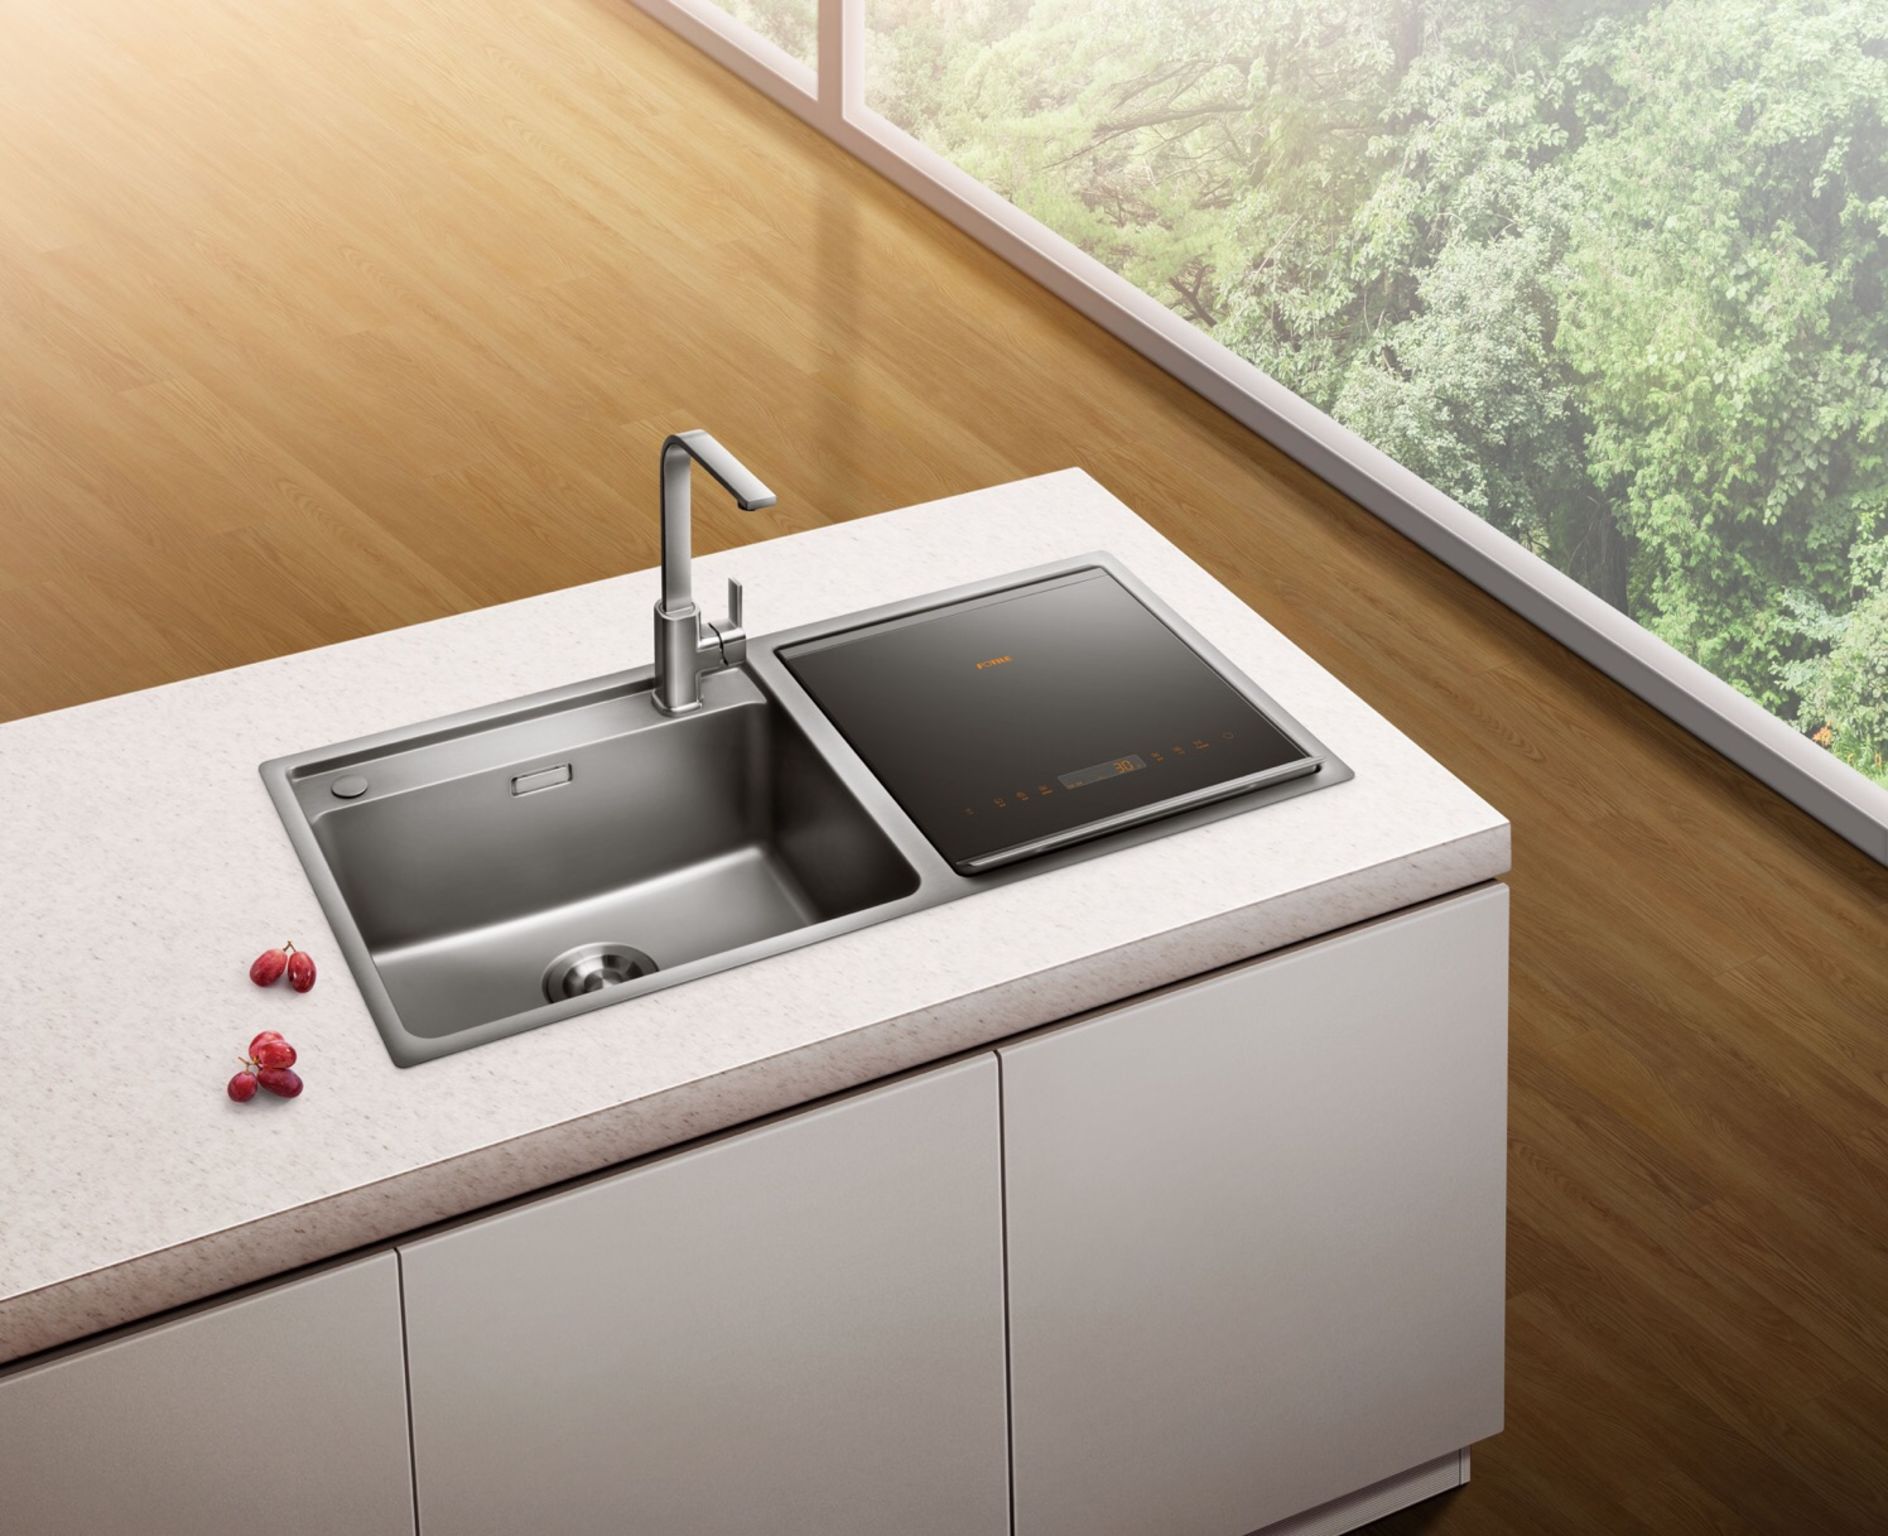  Fotile sink dishwasher  JBSD2F Q5B iF WORLD DESIGN GUIDE